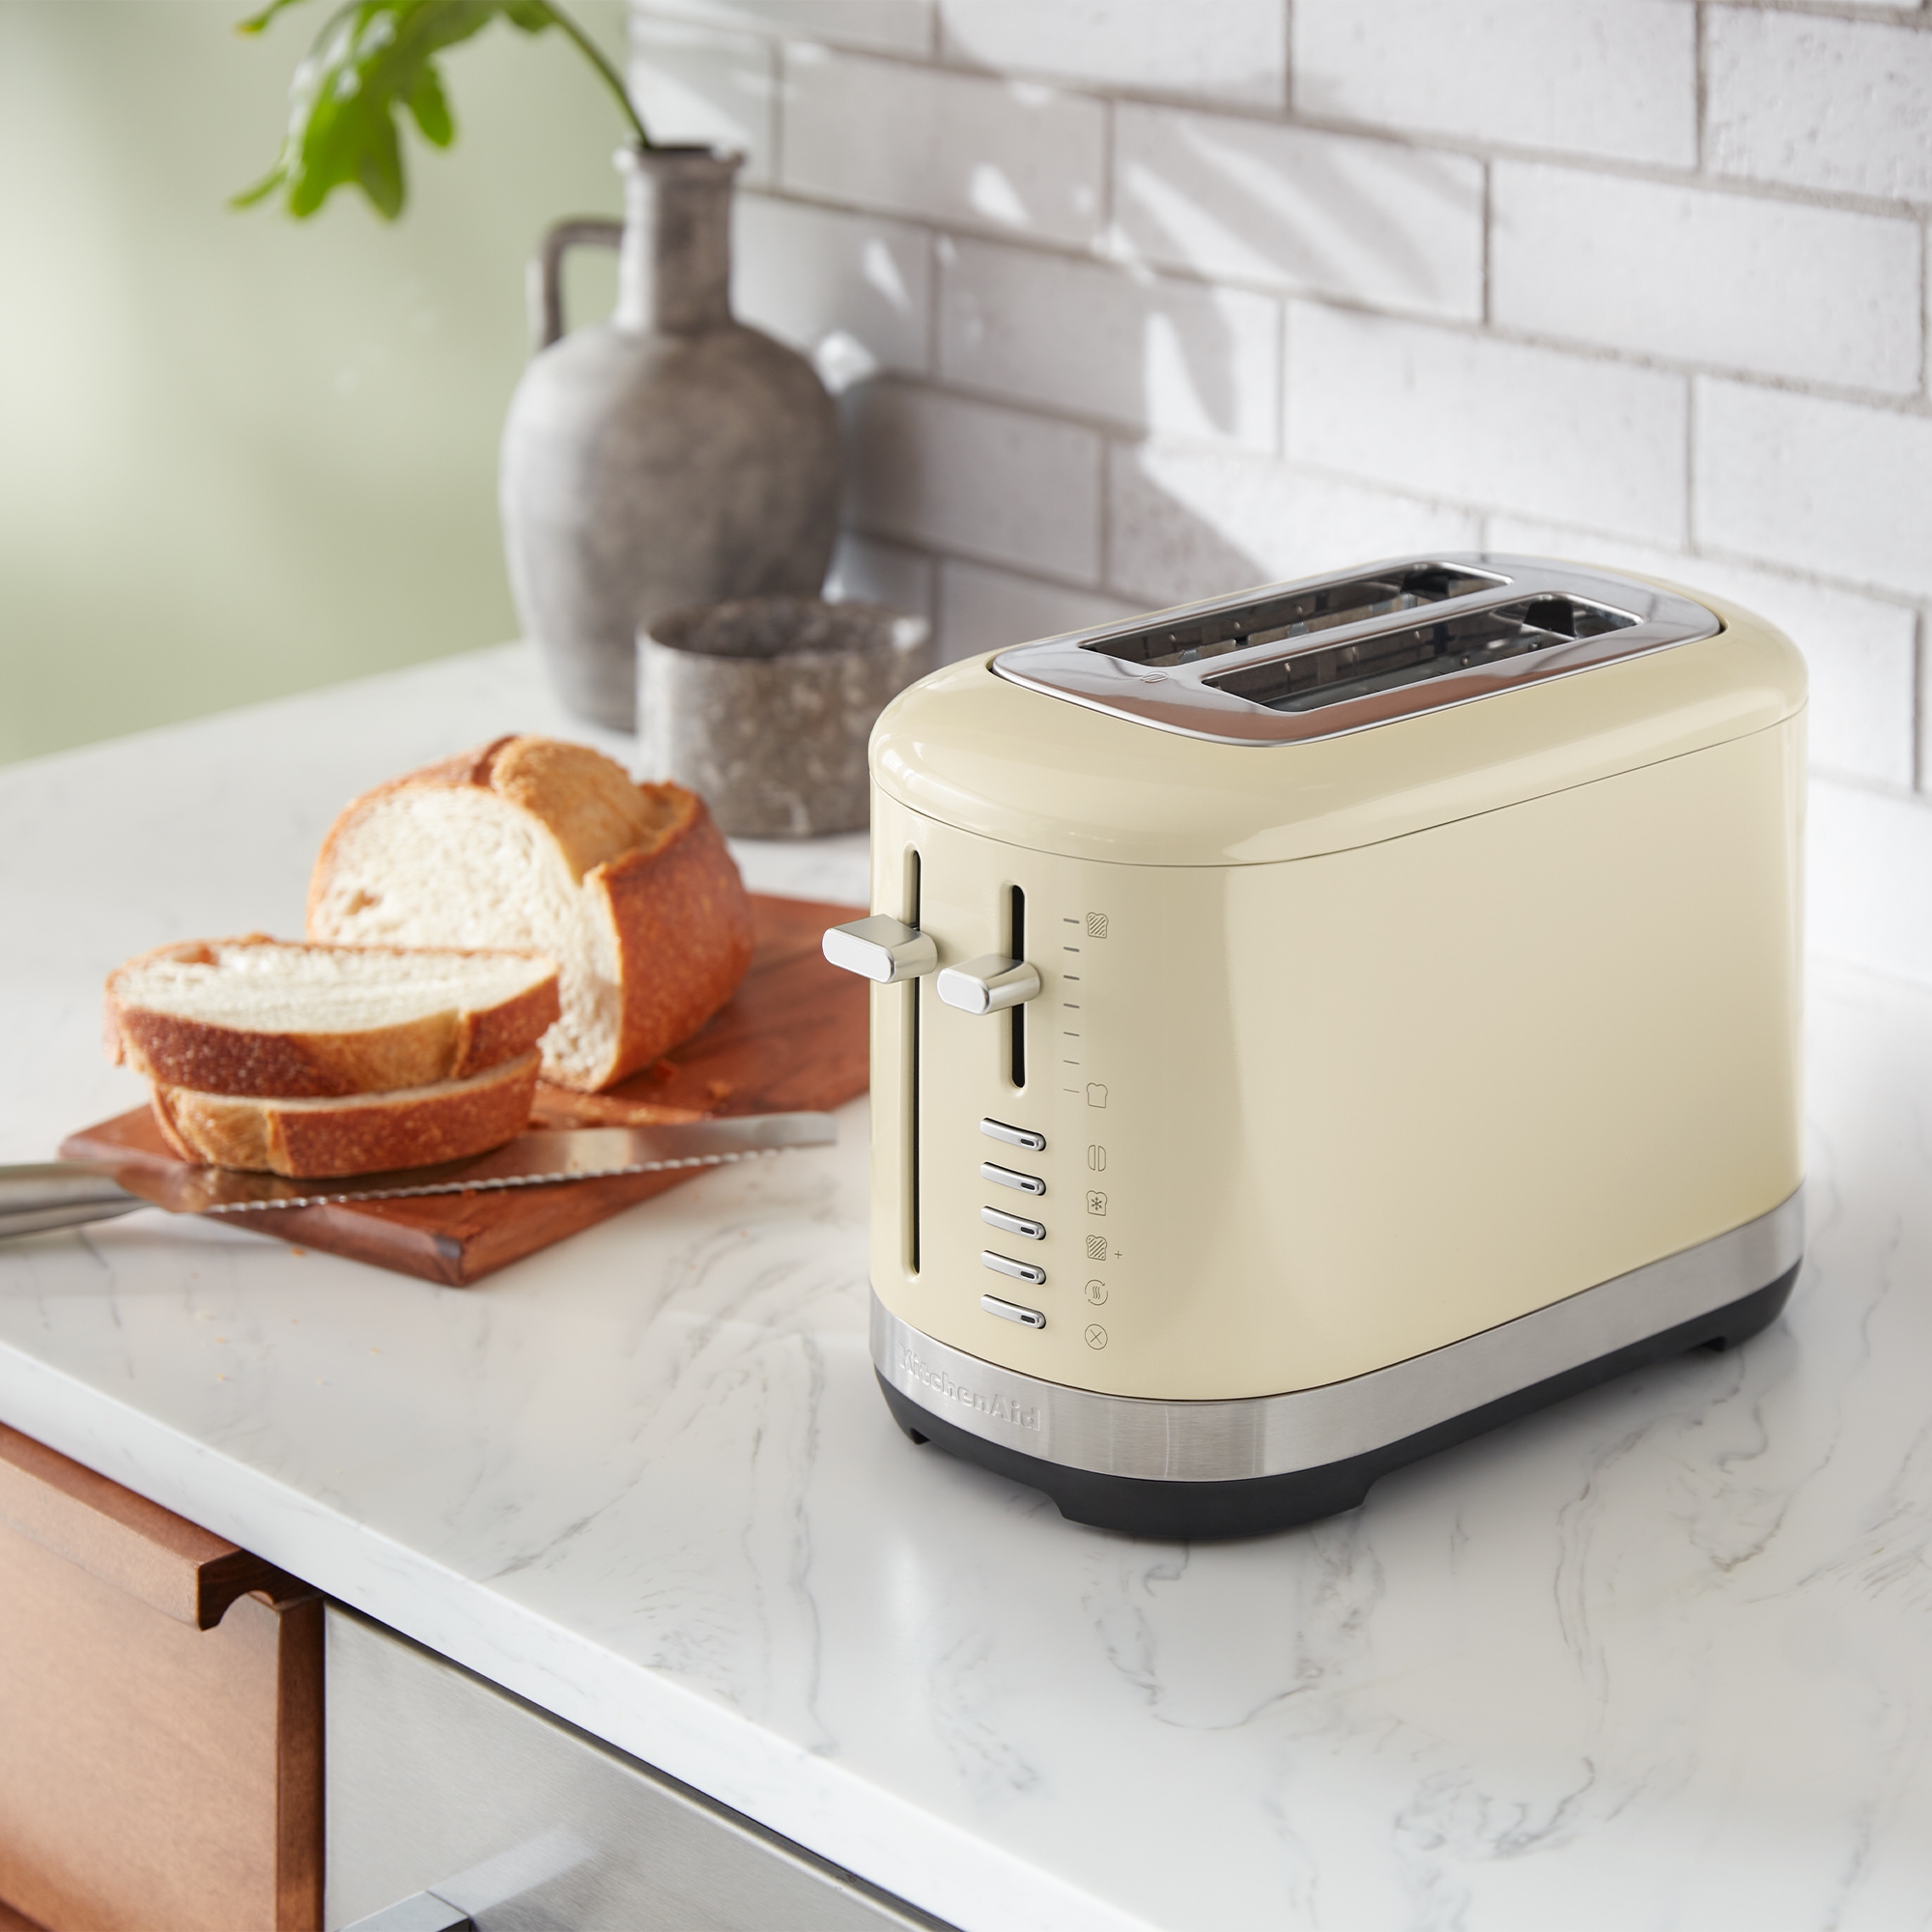 KitchenAid - Toaster mit manueller Bedienung für 2 Scheiben - Creme